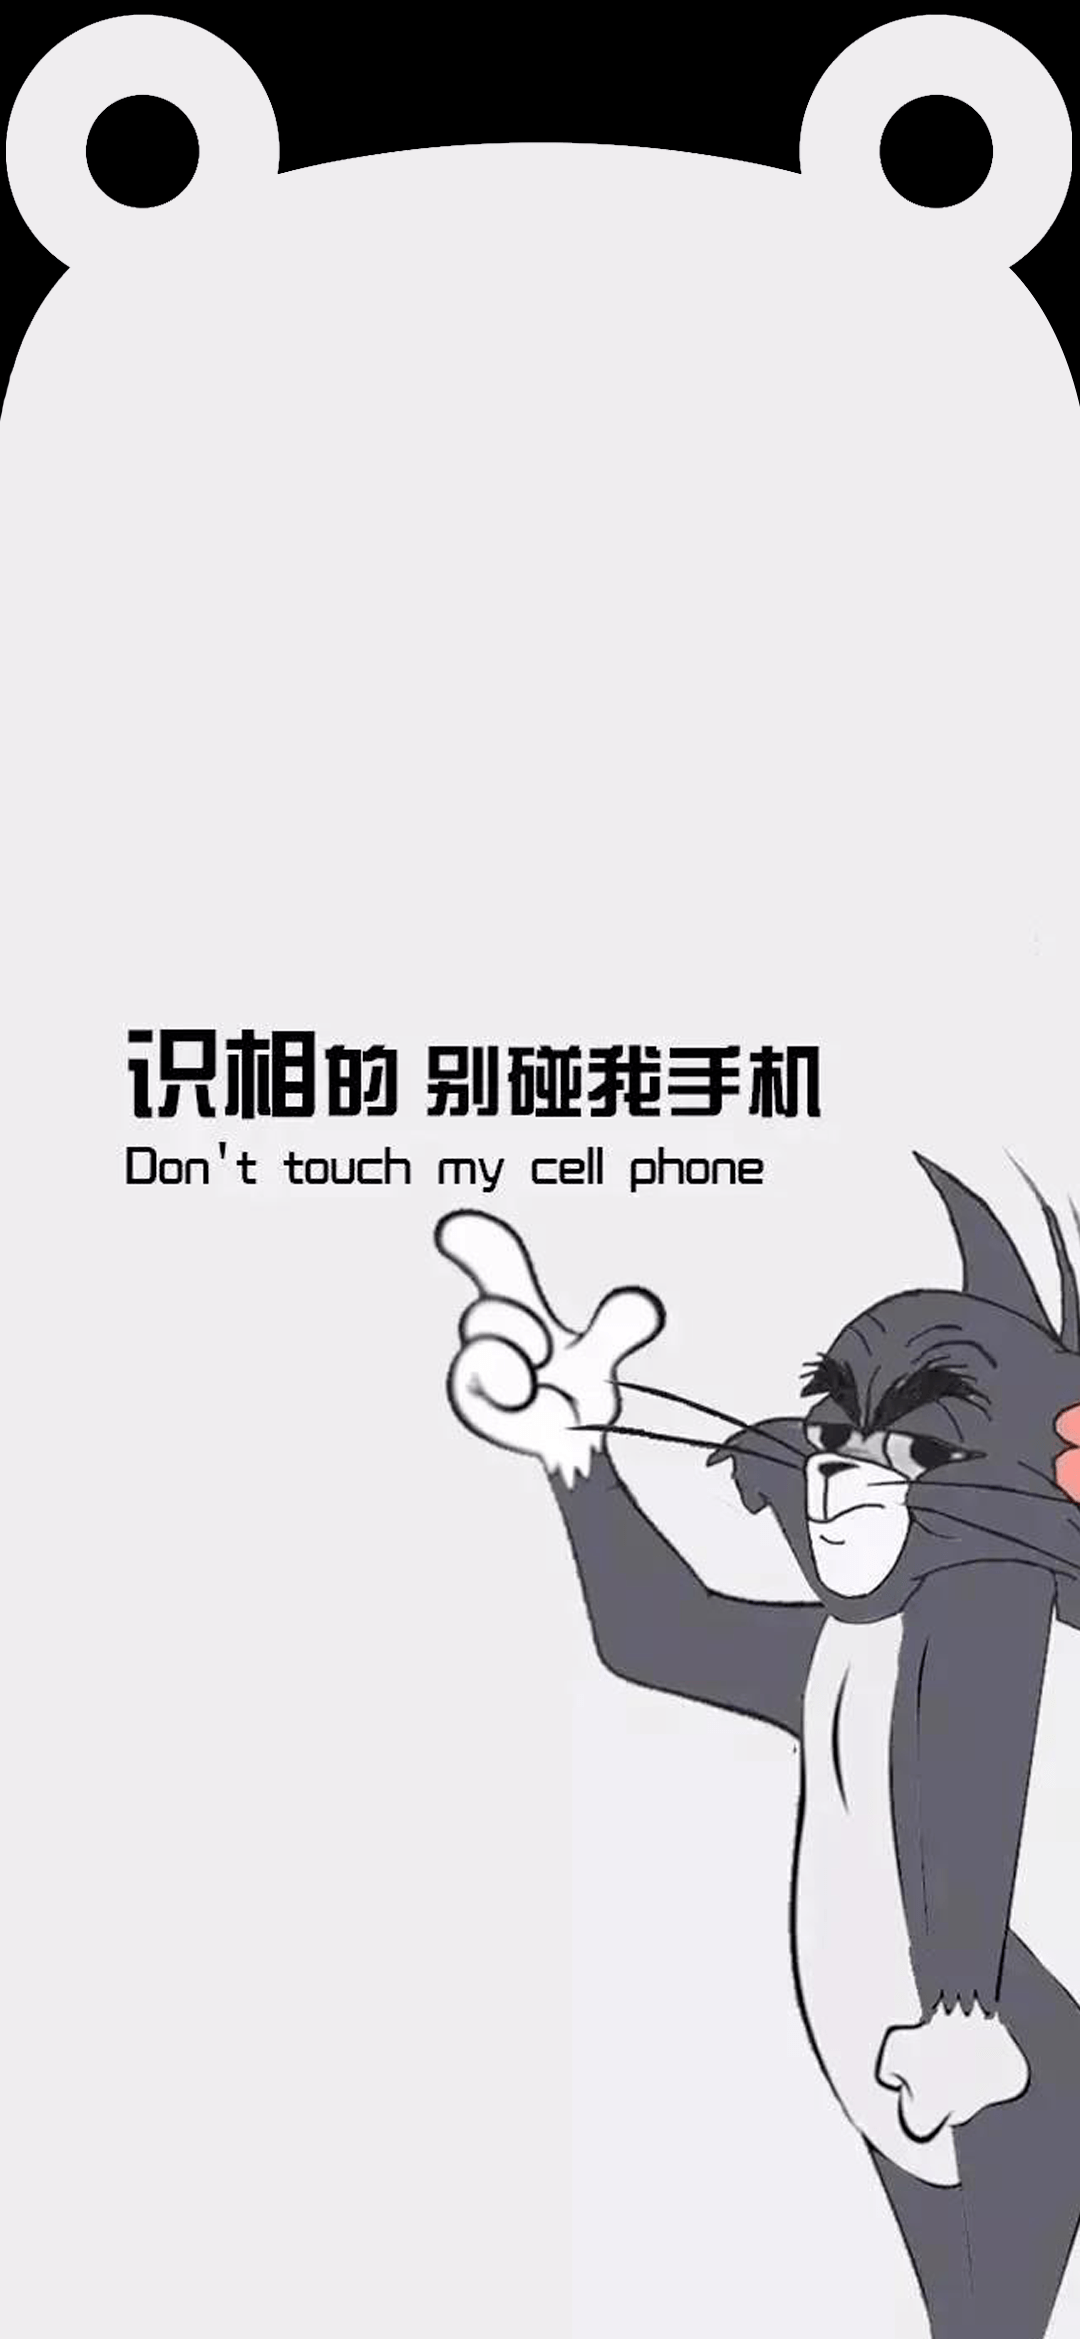 iphone壁纸刘海特效图片